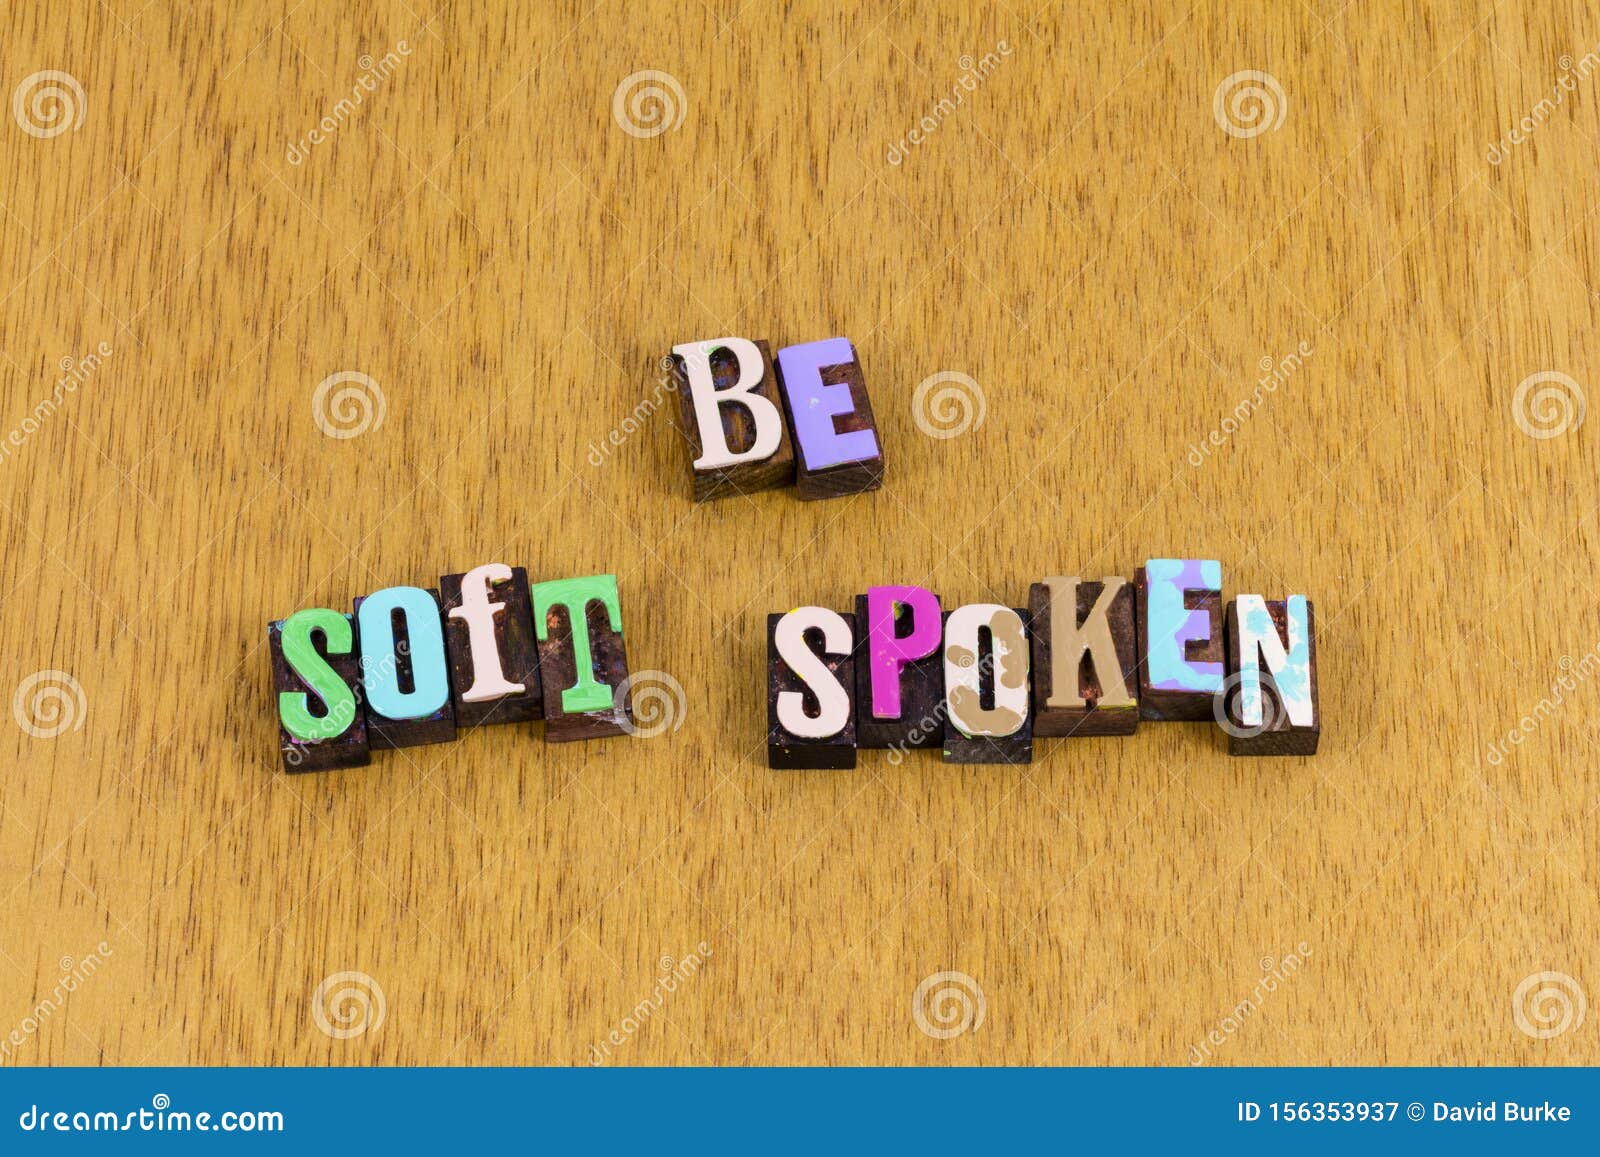 be soft spoken silent quiet voice gentle kind letterpress phrase